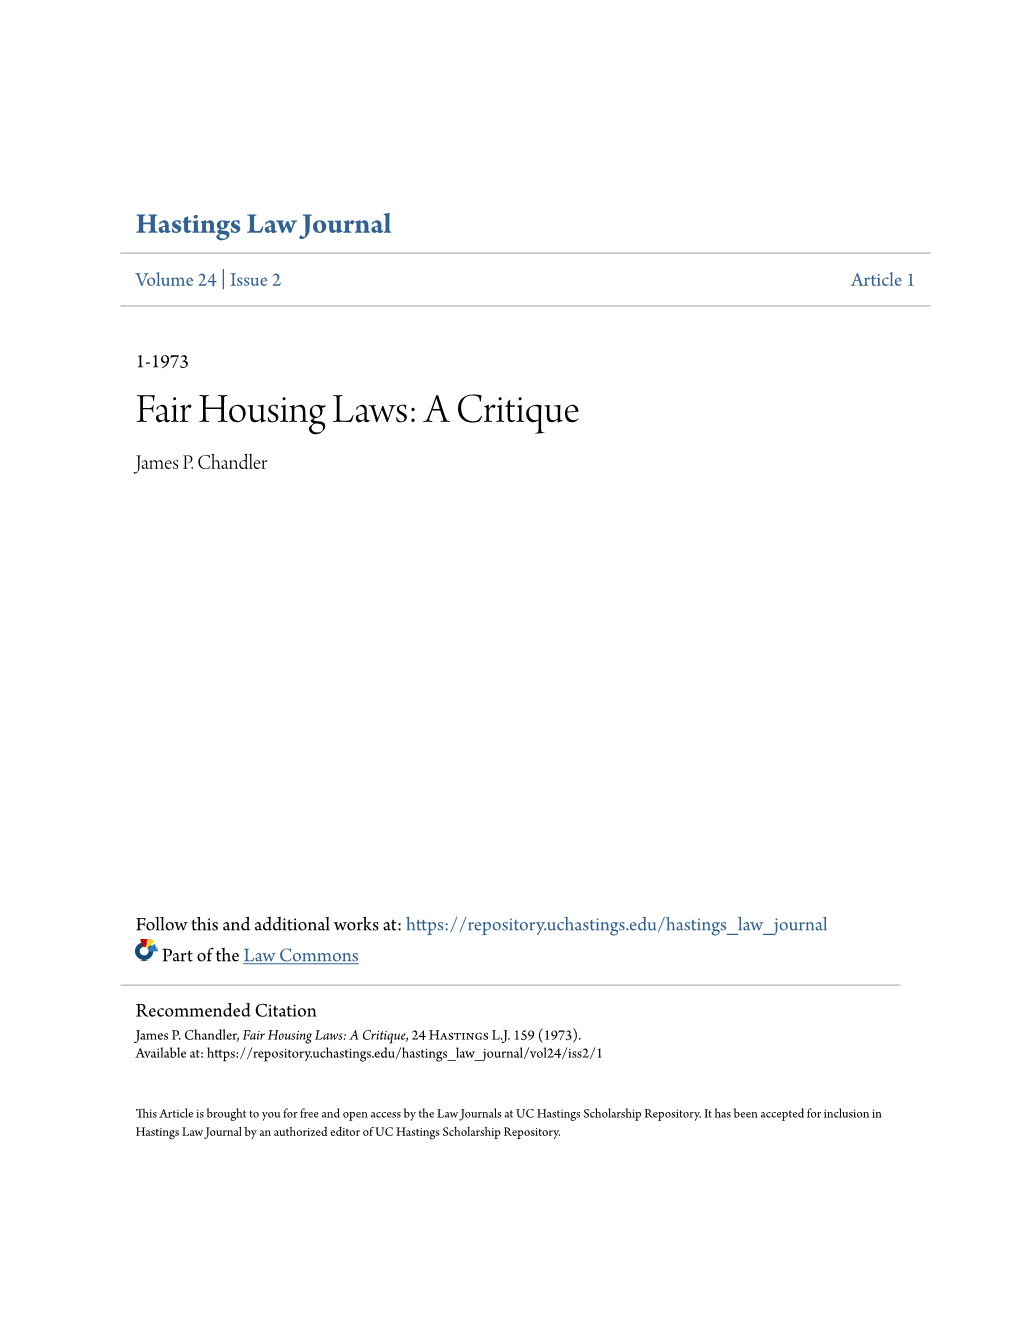 Fair Housing Laws: a Critique James P